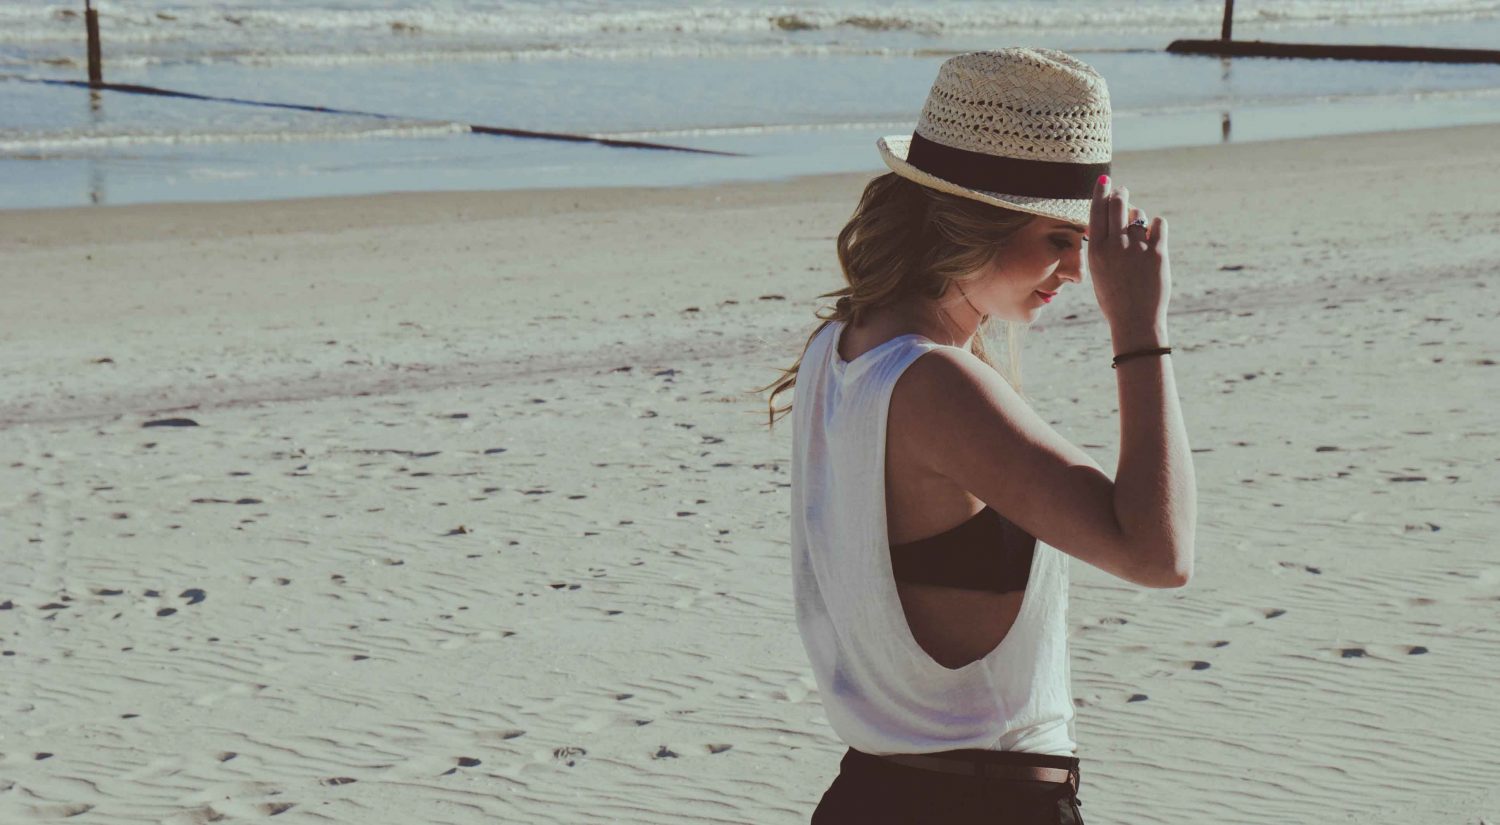 Woman walking on beach wearing hat